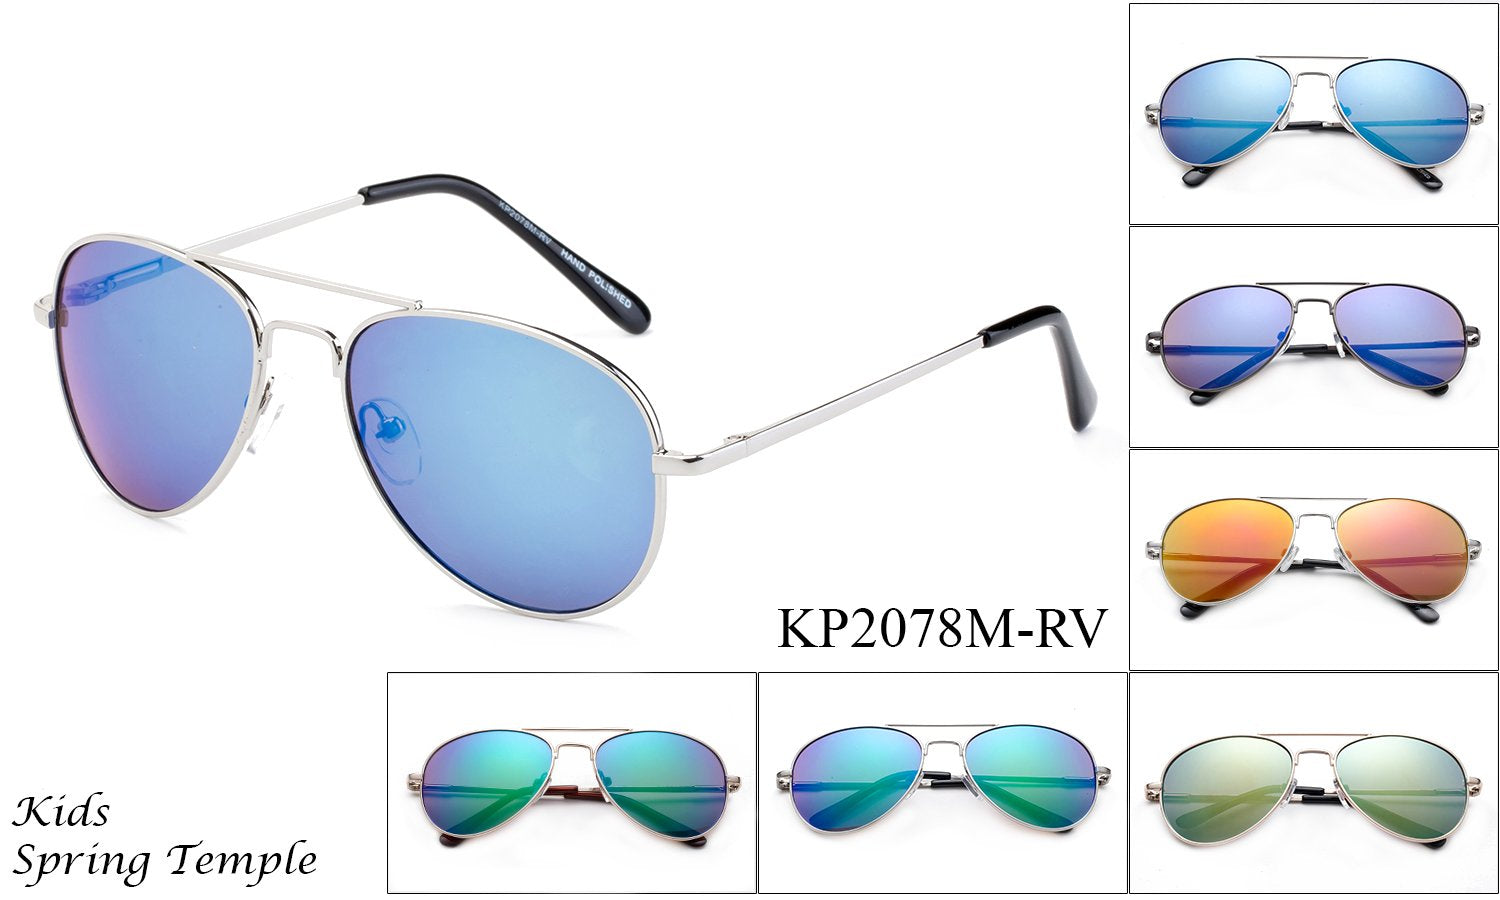 Mirrored Aviator Sunglasses for Kids